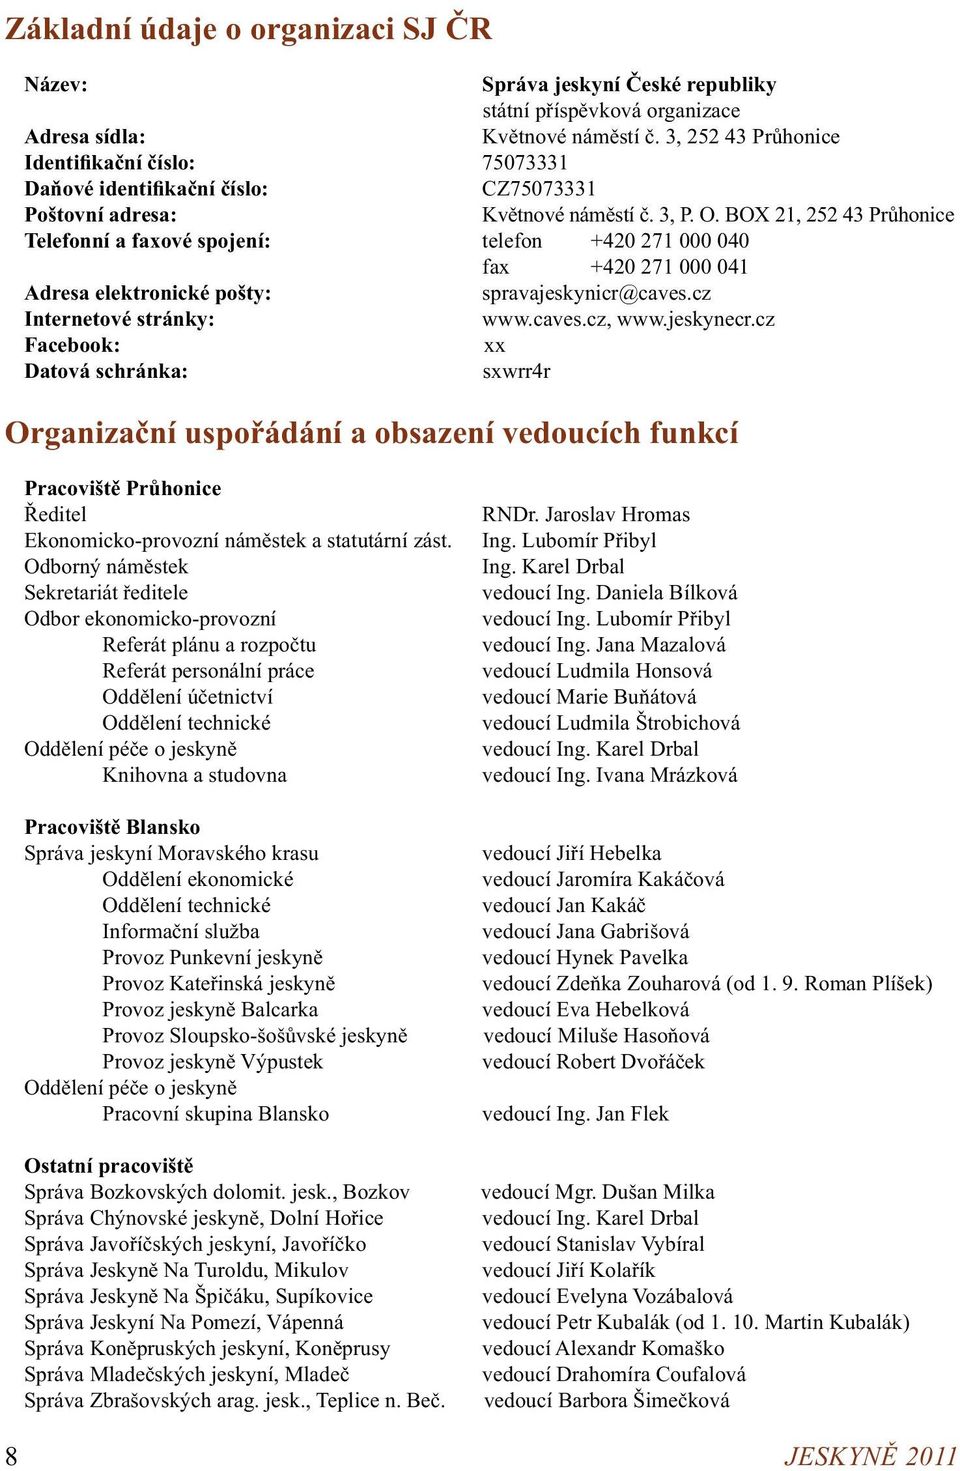 BOX 21, 252 43 Průhonice Telefonní a faxové spojení: telefon +420 271 000 040 fax +420 271 000 041 Adresa elektronické pošty: spravajeskynicr@caves.cz Internetové stránky: www.caves.cz, www.jeskynecr.